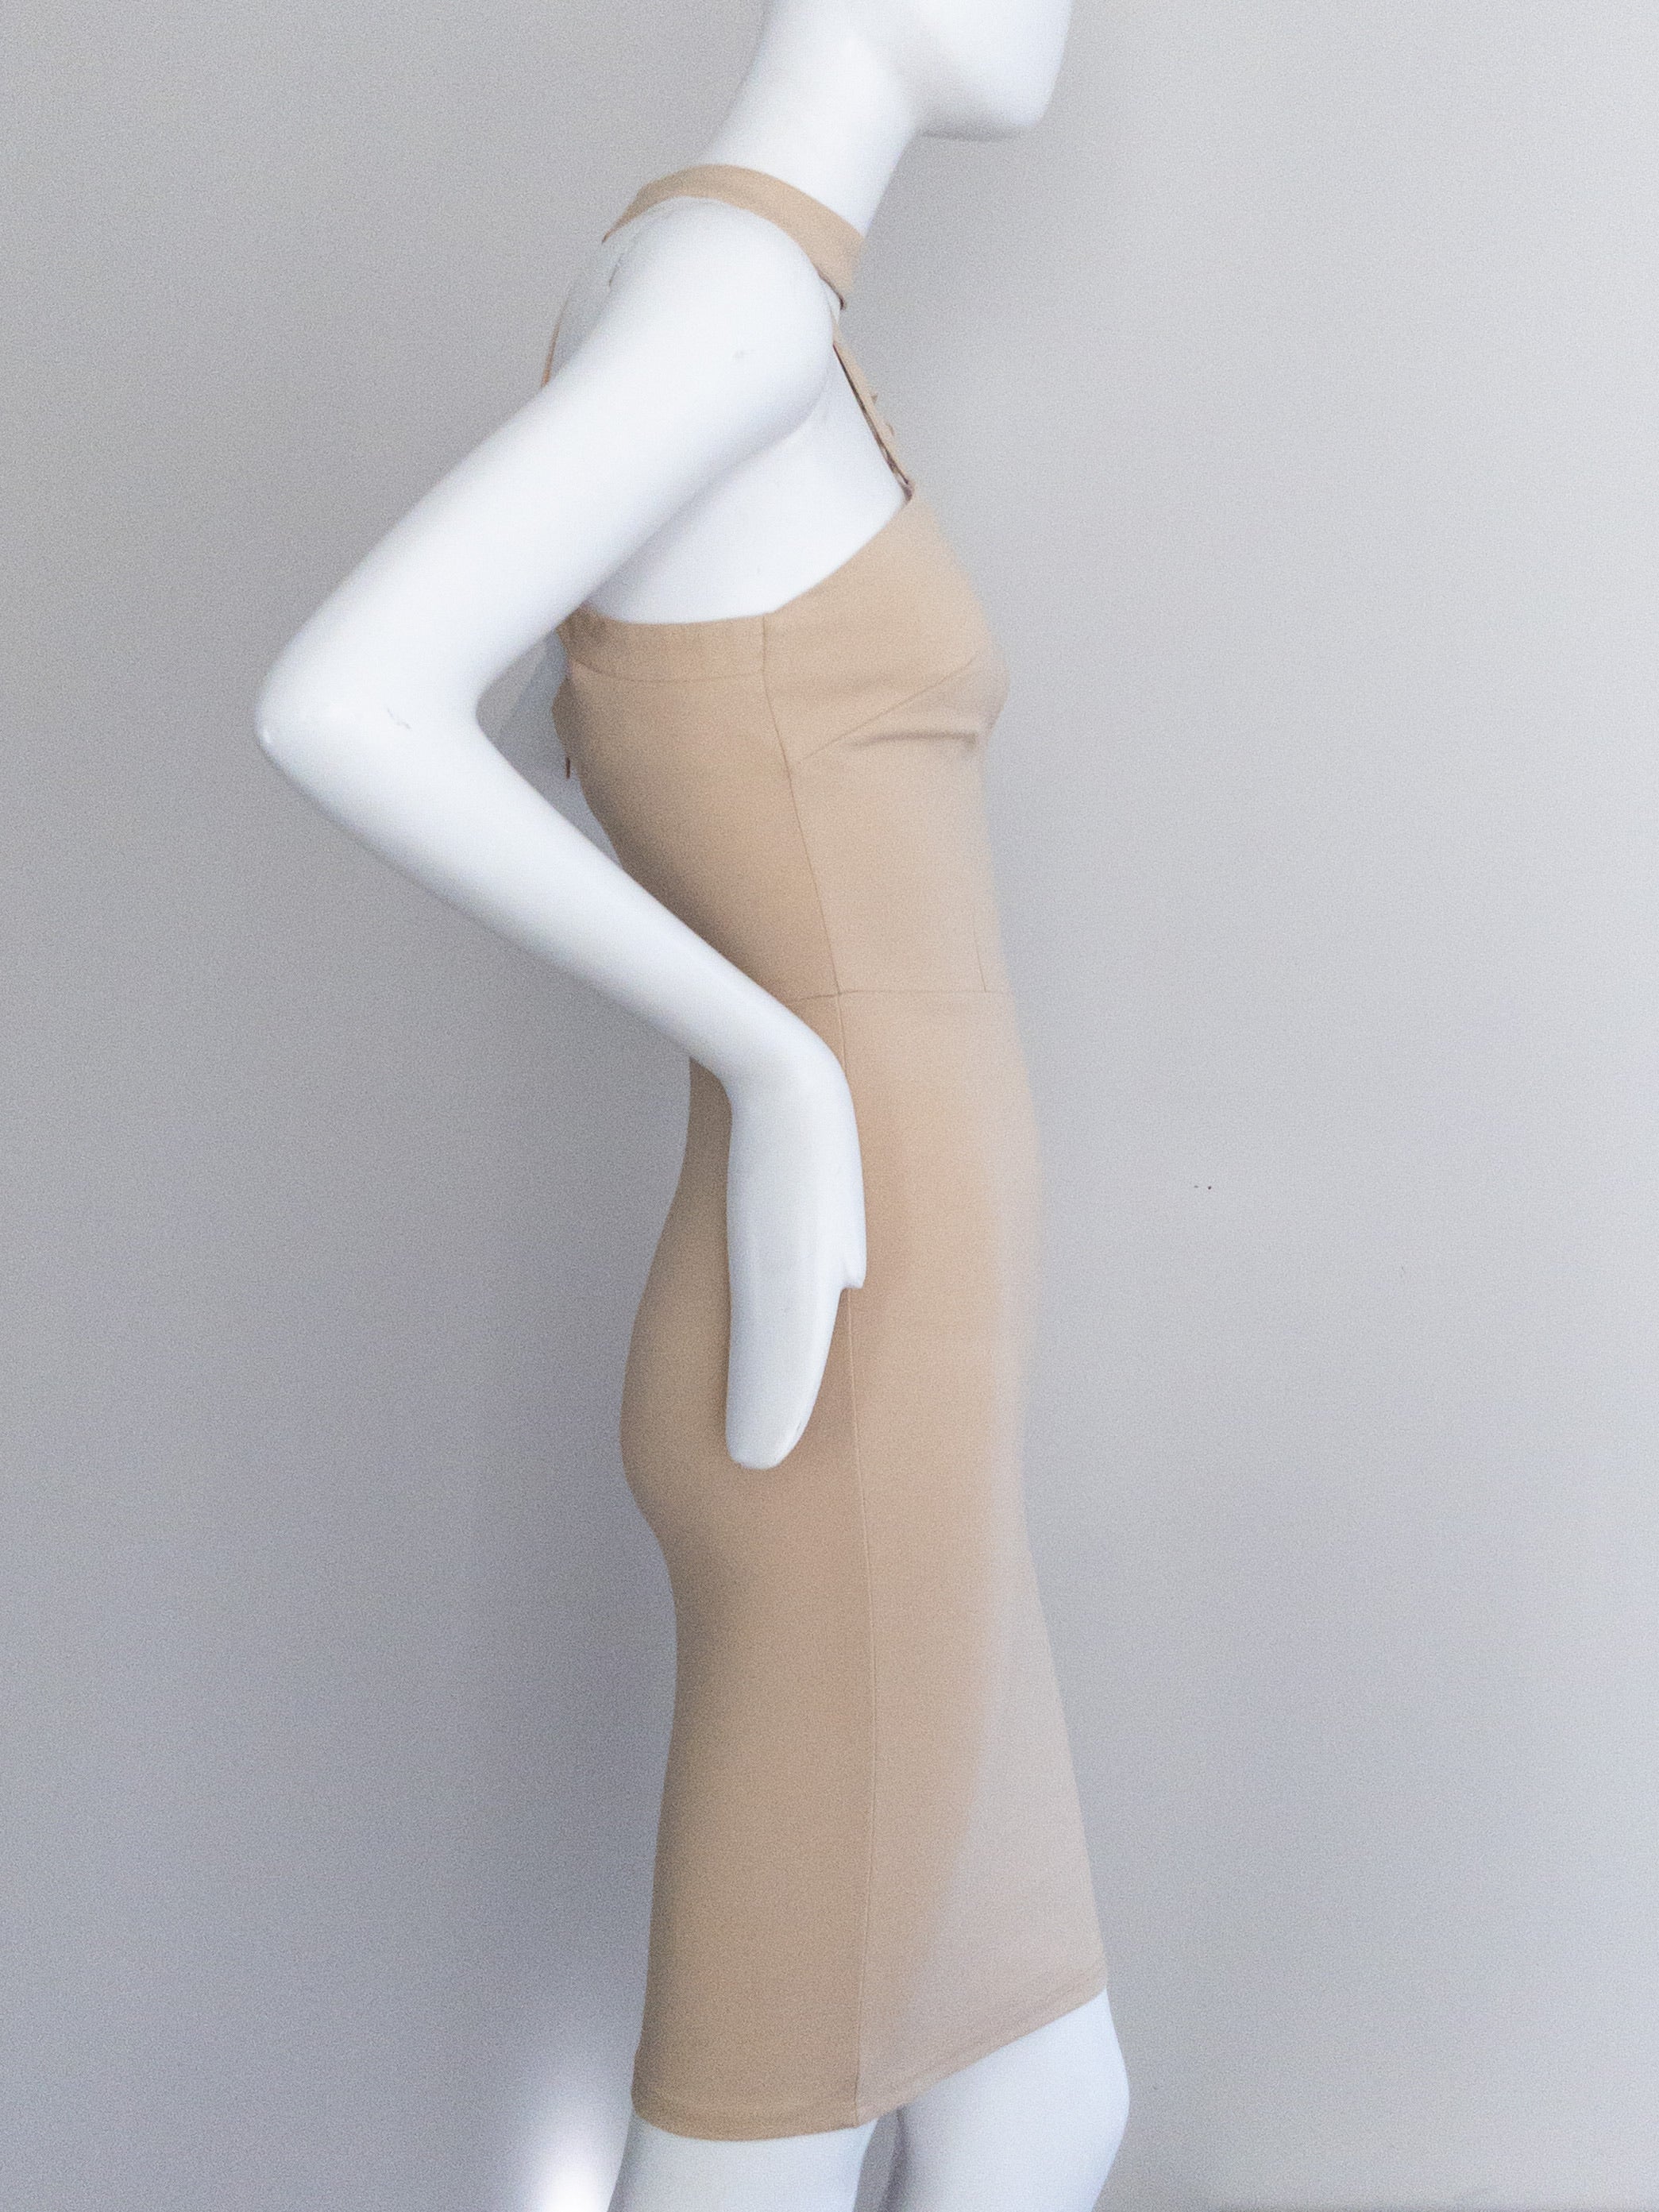 BNWT LEVORA Sexy Bodycon Halterneck Dress - Size 6